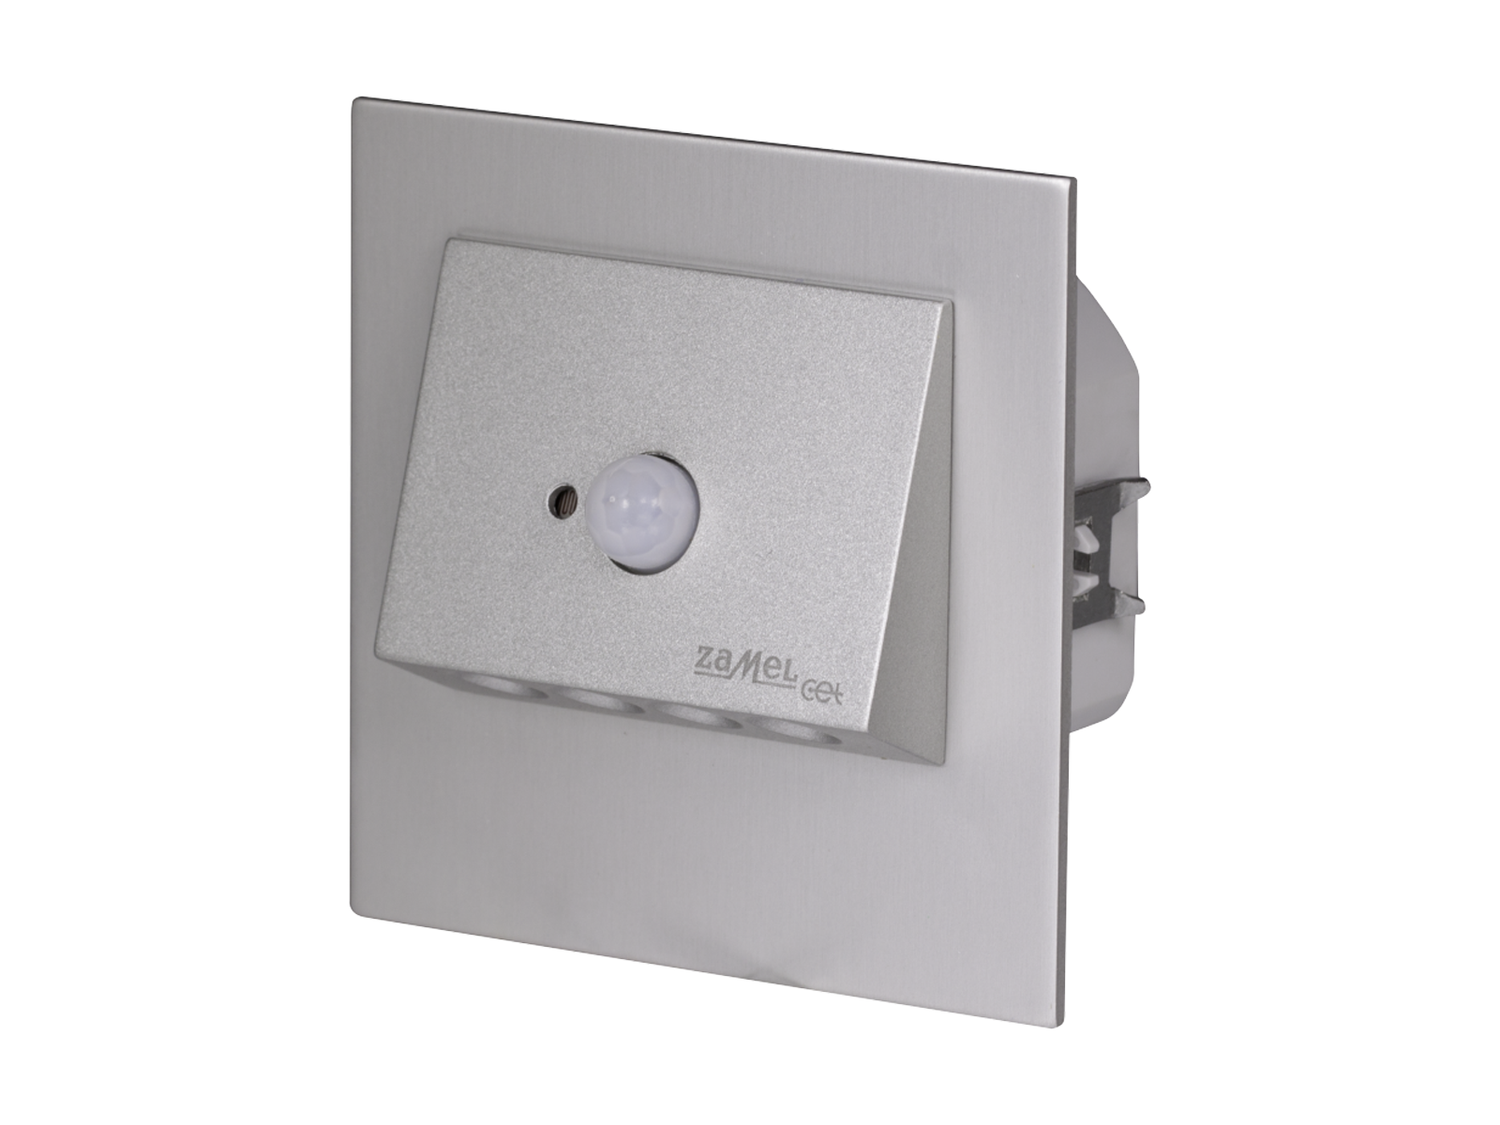 Svítidlo LED se senzorem do KU krabice LEDIX NAVI 230 V AC, hliník, studená bílá, IP20